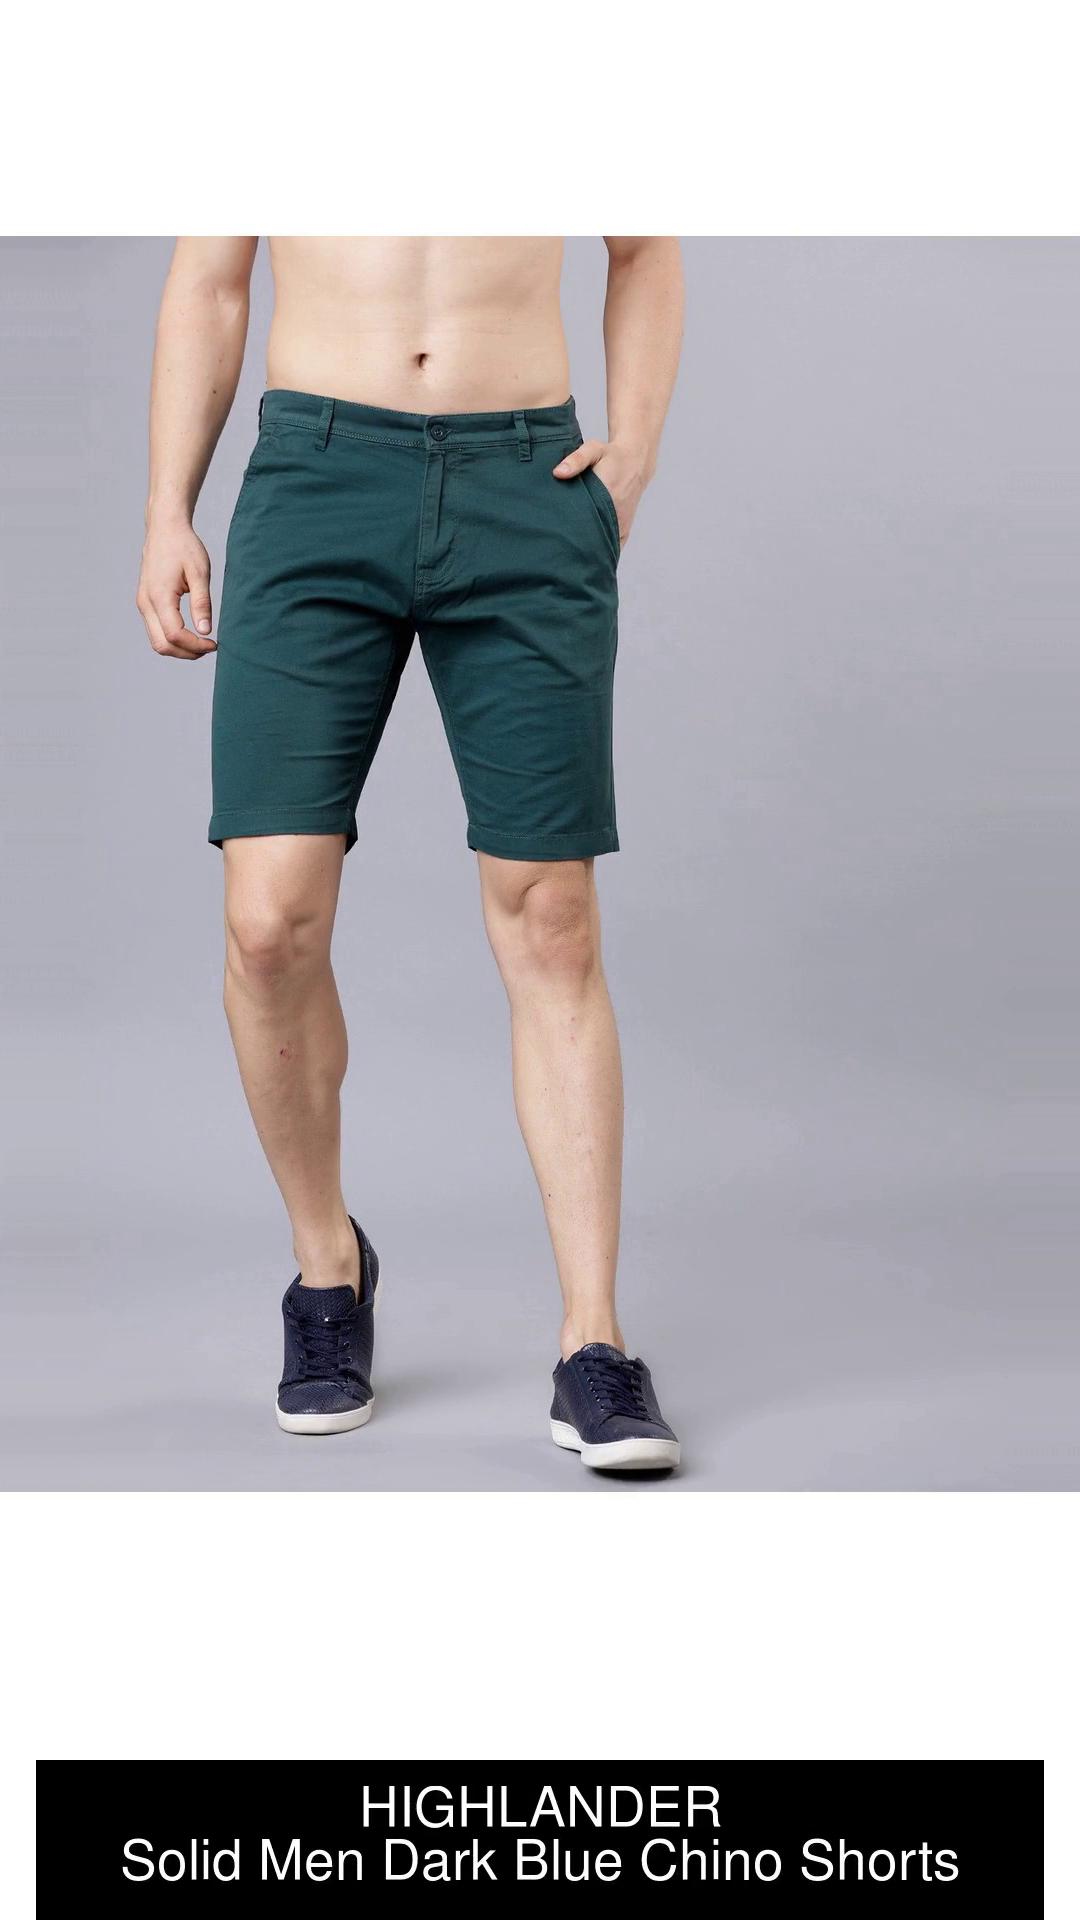 HIGHLANDER Solid Men Dark Blue Chino Shorts